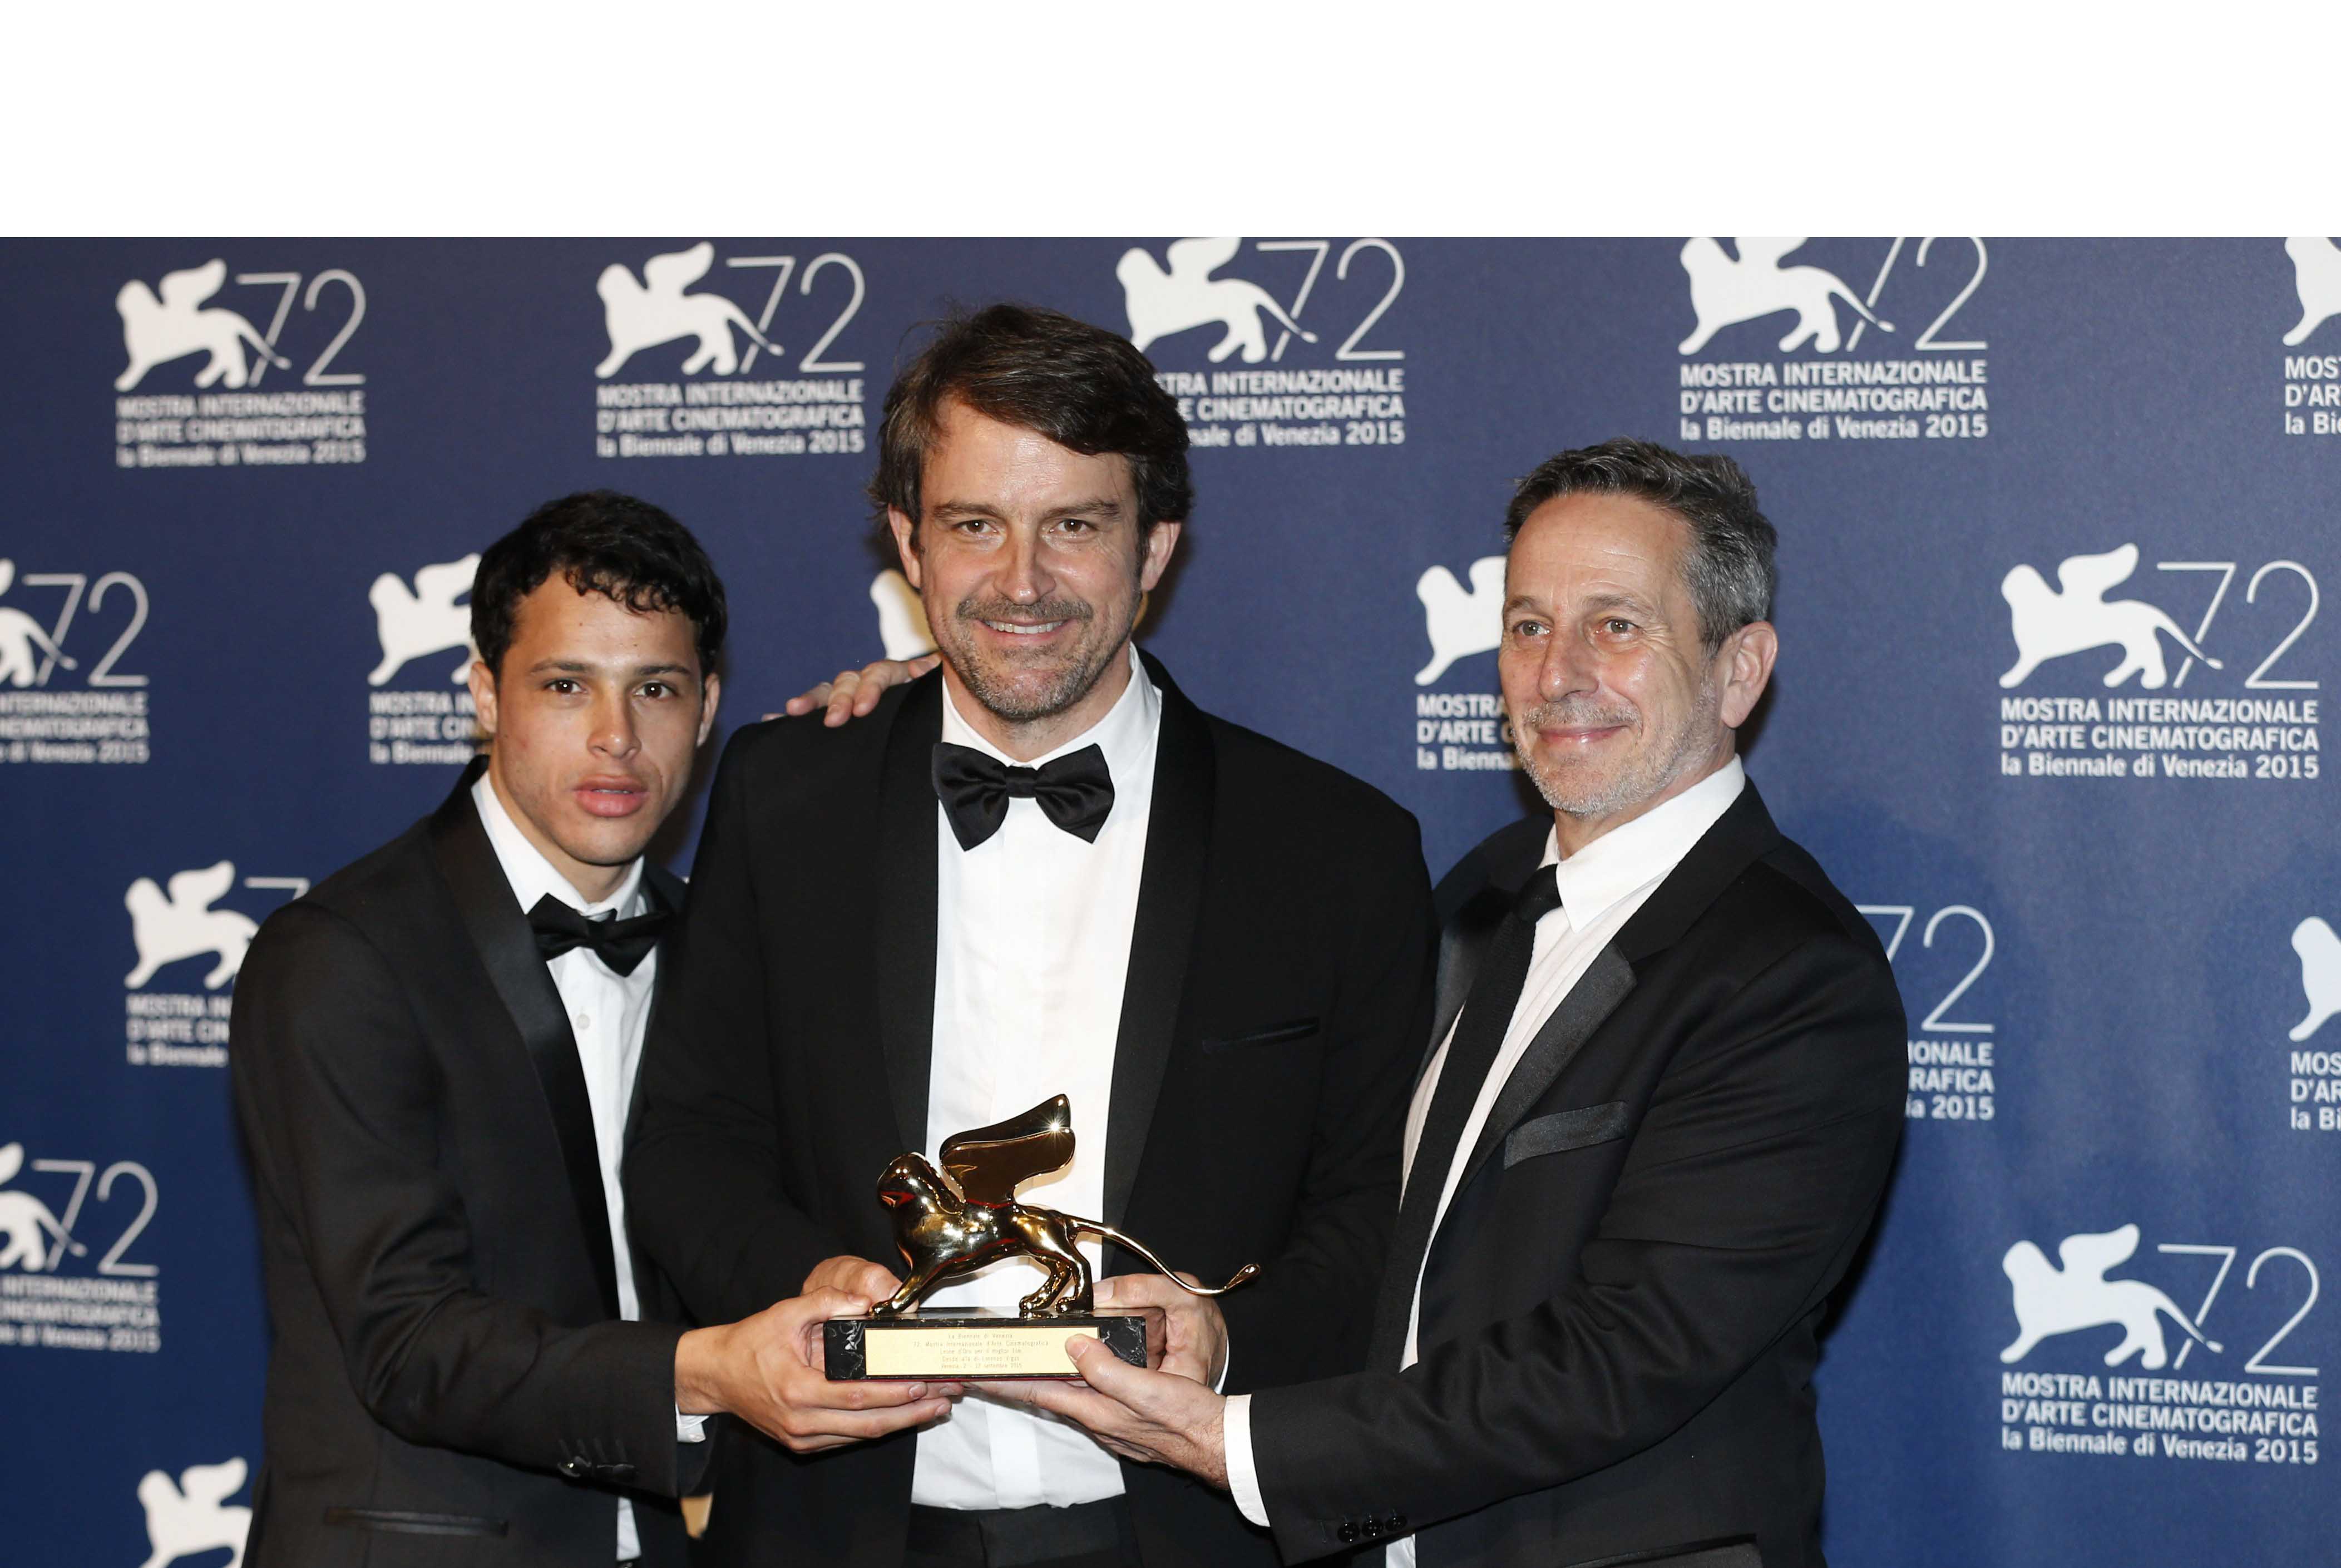 El filme venezolano "Desde Allá" fue seleccionado para representar a nuestro país en la 89° edición de los Premios Oscar de la Academia